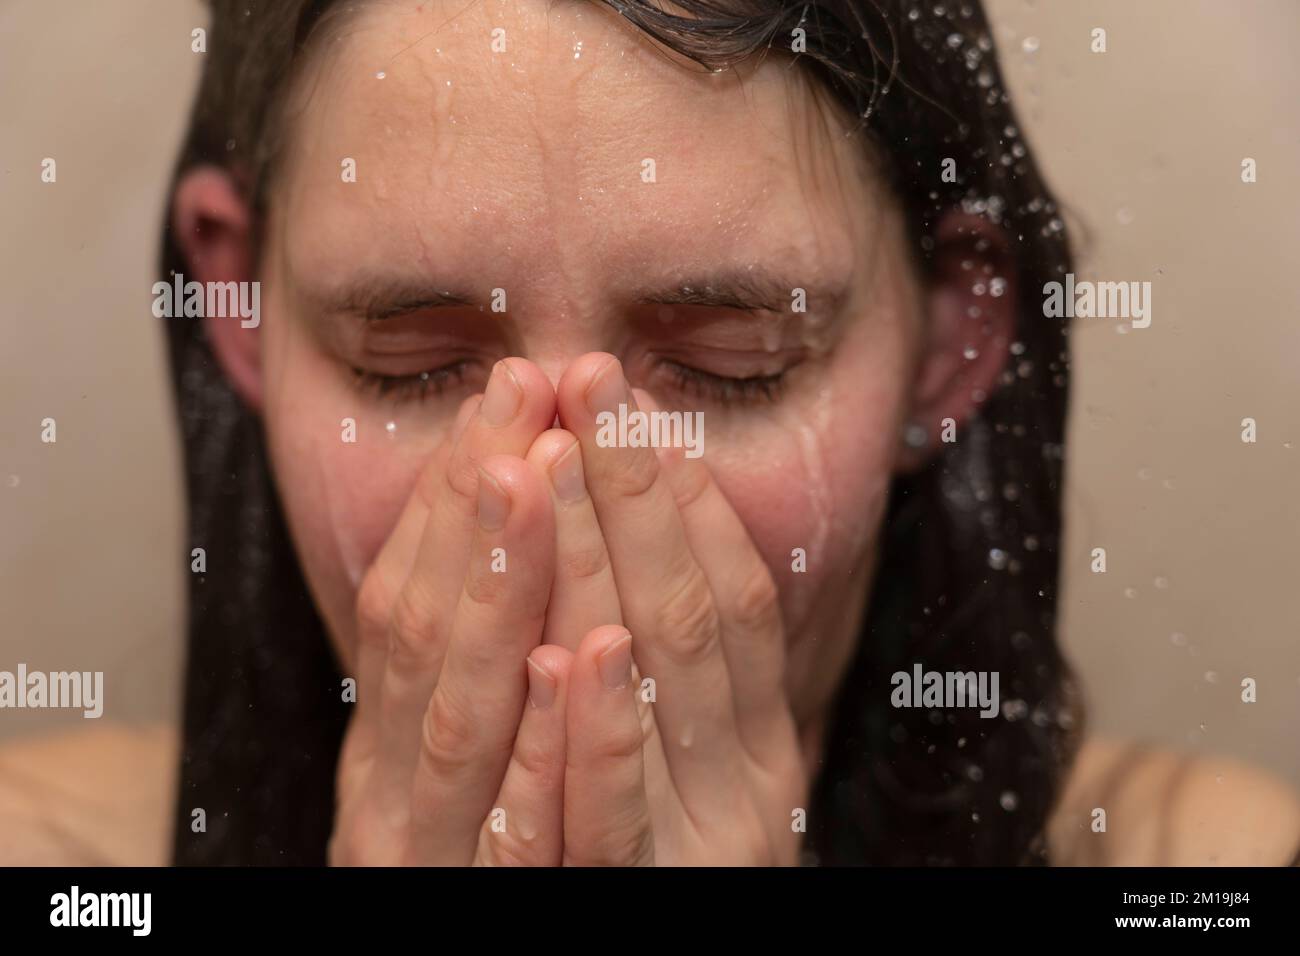 Eine junge Frau unter der Dusche, mit Wasser, das ihr emotionales Gesicht runterläuft. Konzept: Bipolare Störung, psychische Gesundheit, Traurigkeit, Niedergeschlagenheit, Traurigkeit Stockfoto